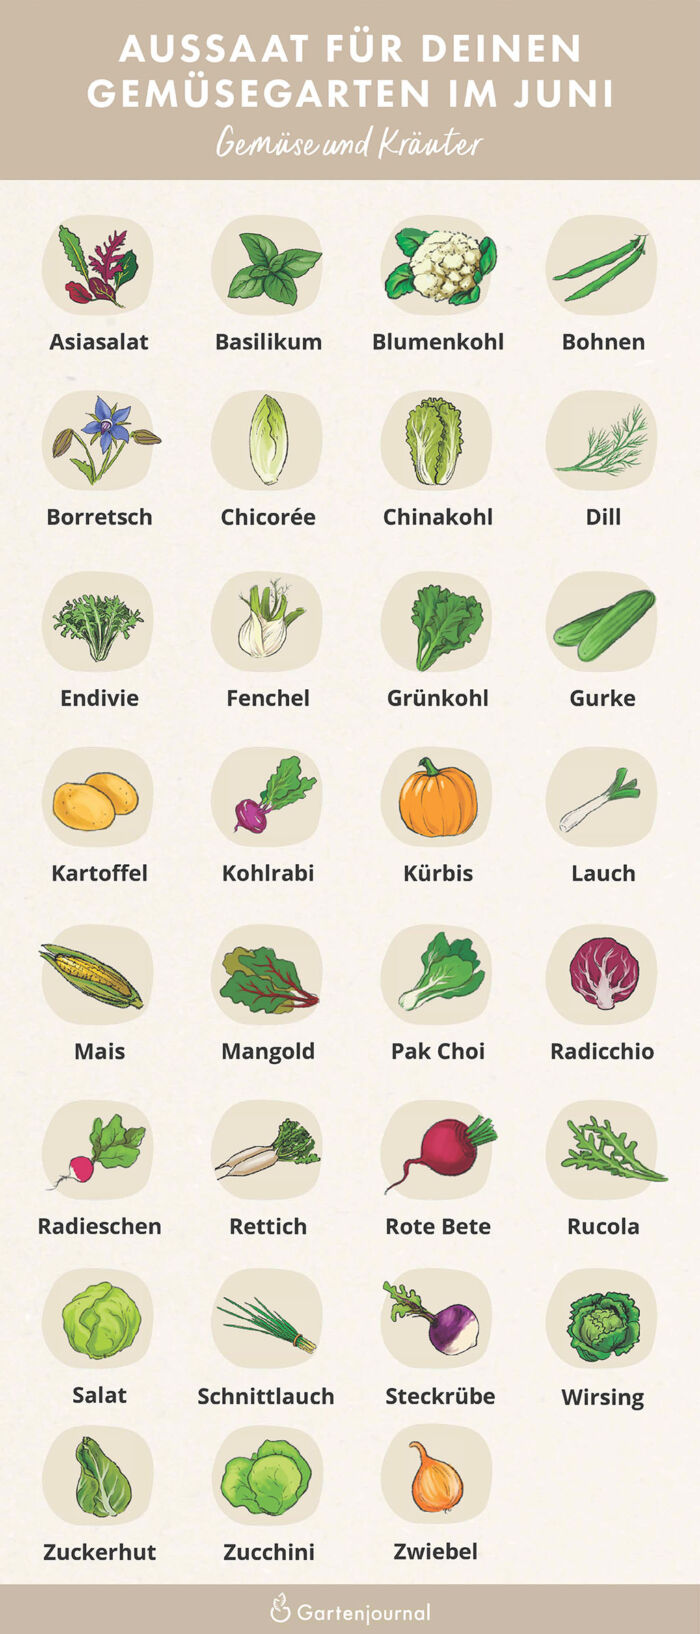 Illustrierter Gartenkalender der zeigt, welche Gemüse und Kräuter im Juni ausgesät werden